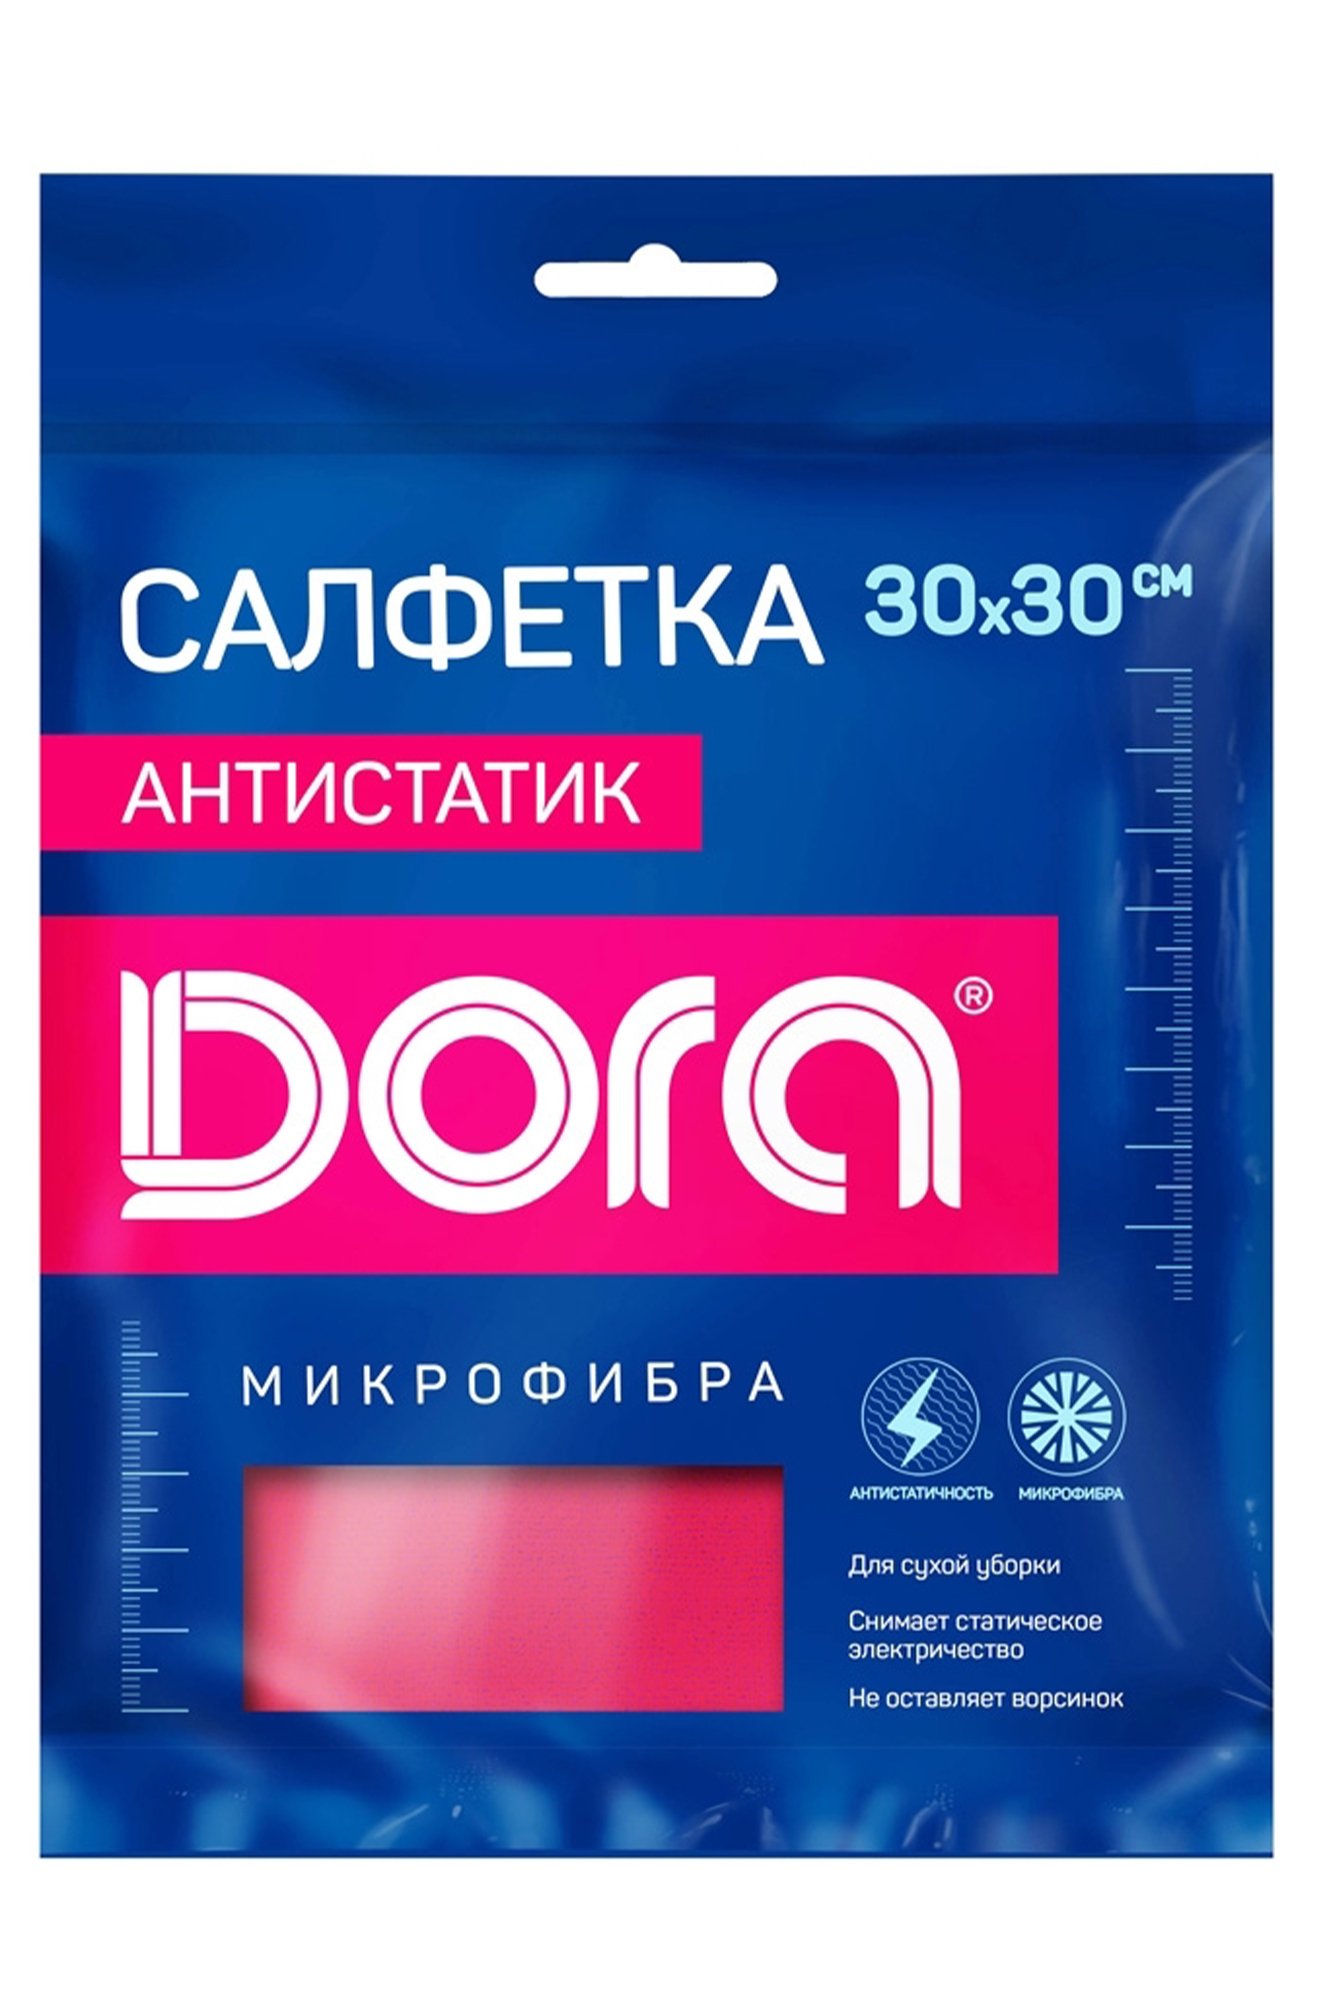 Салфетка из микрофибры антистатик для сухой уборки Dora